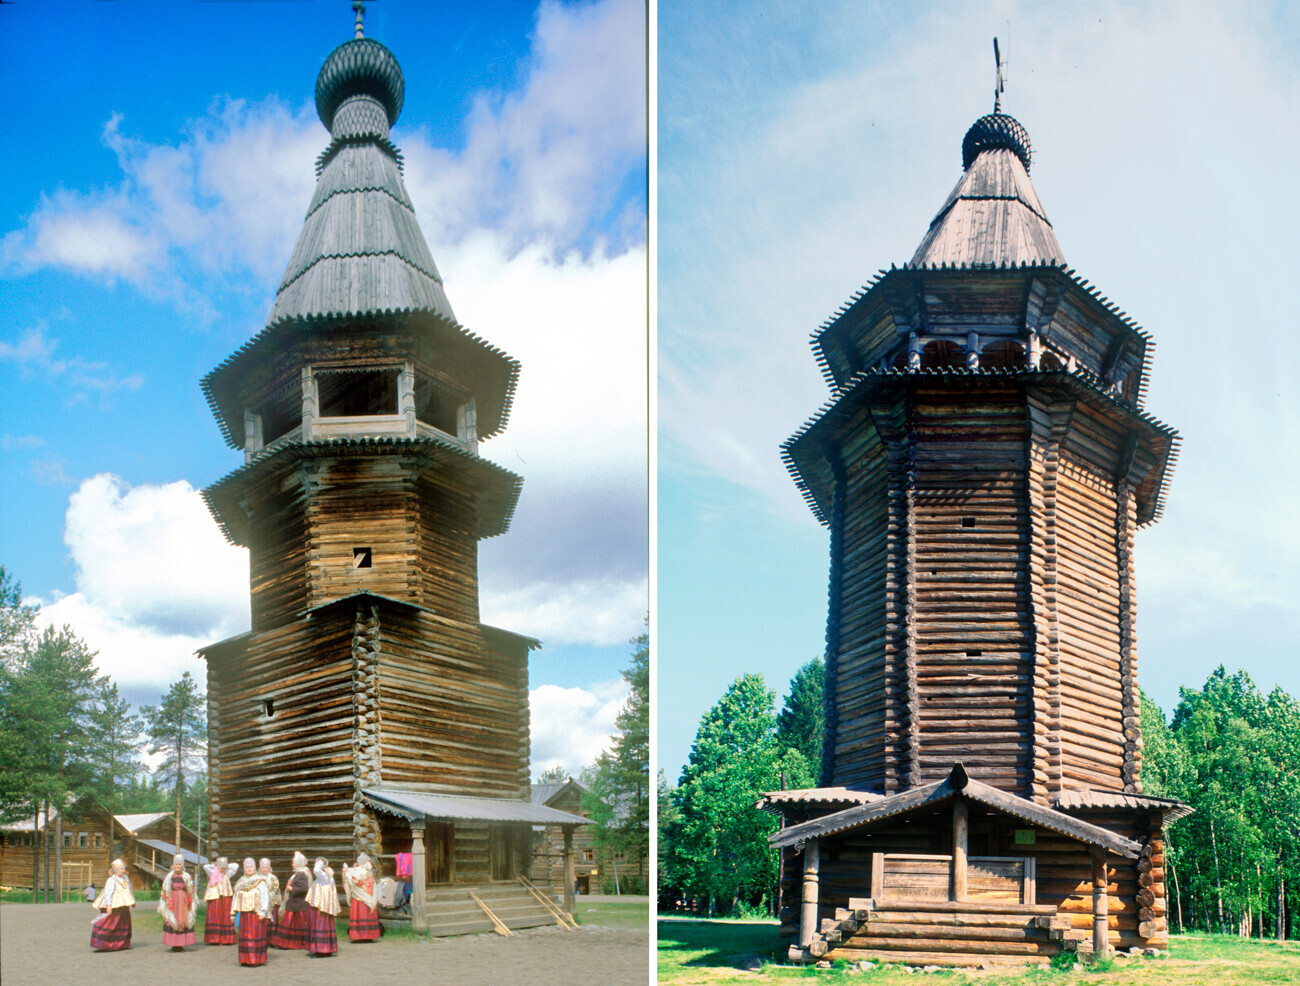 Kiri: Menara lonceng kayu di Gereja Kenaikan, desa Kushereka. 21 Juni 2003. Kanan: Menara lonceng kayu dari desa Kuliga-Drakovanovo, distrik Krasnoborsk. 22 Juni 1999.